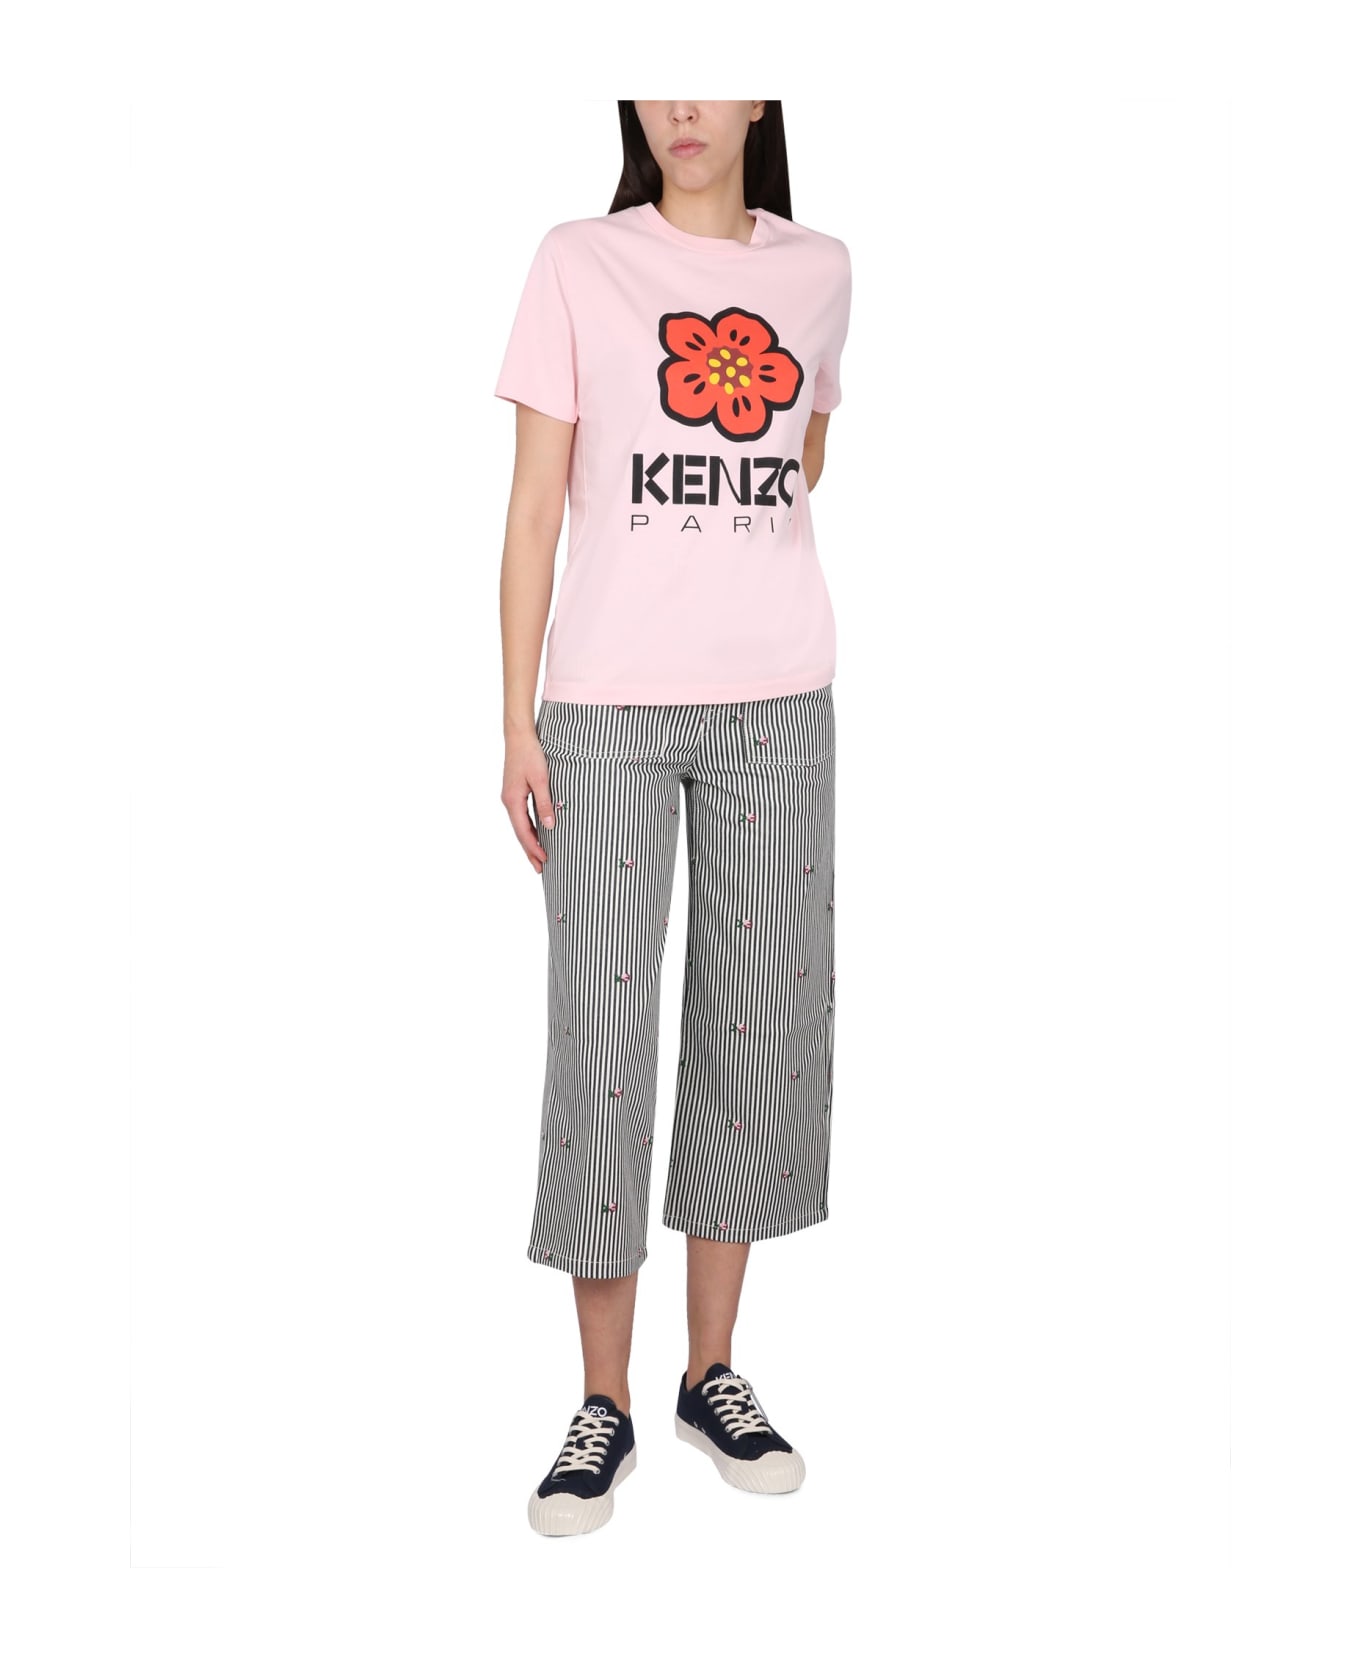 Kenzo Paris Loose T-shirt - Pink